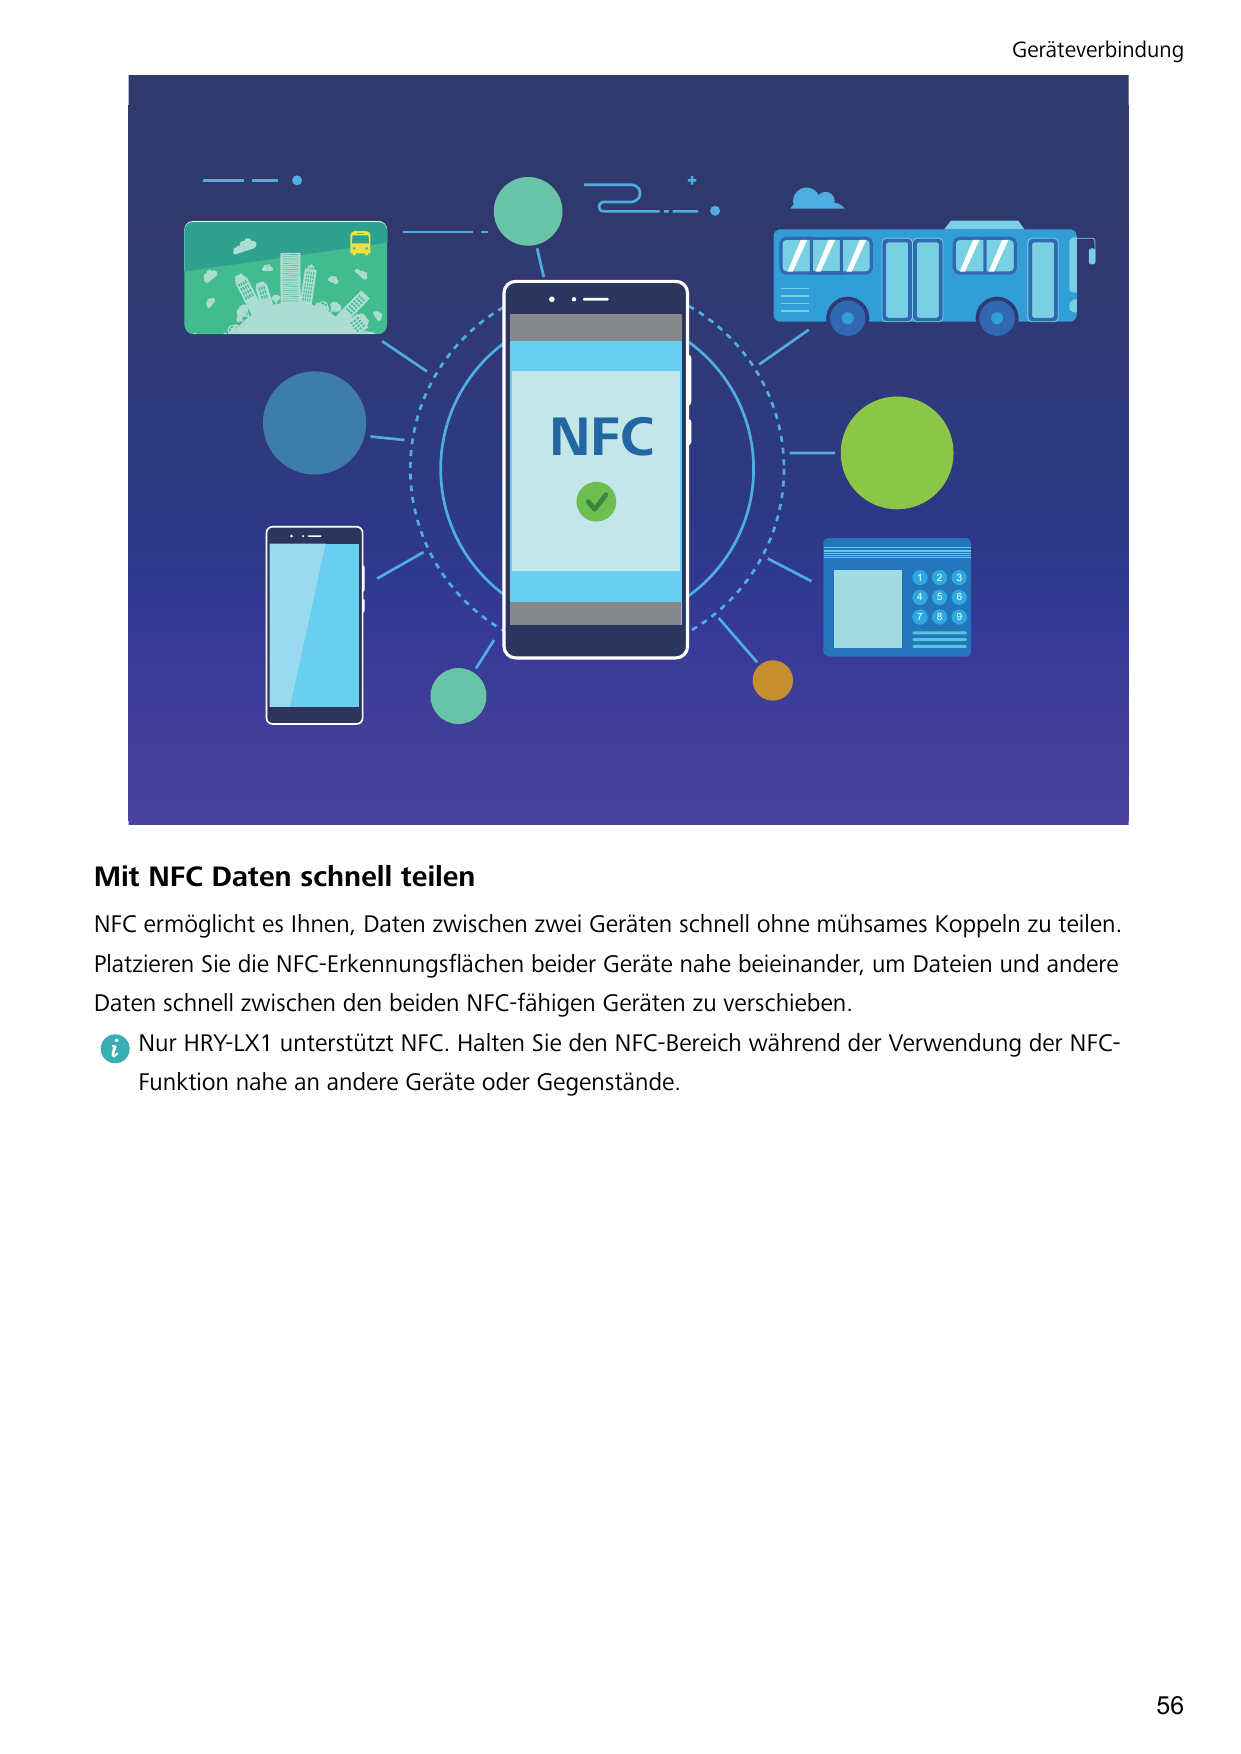 GeräteverbindungNFC123456789Mit NFC Daten schnell teilenNFC ermöglicht es Ihnen, Daten zwischen zwei Geräten schnell ohne mühsam